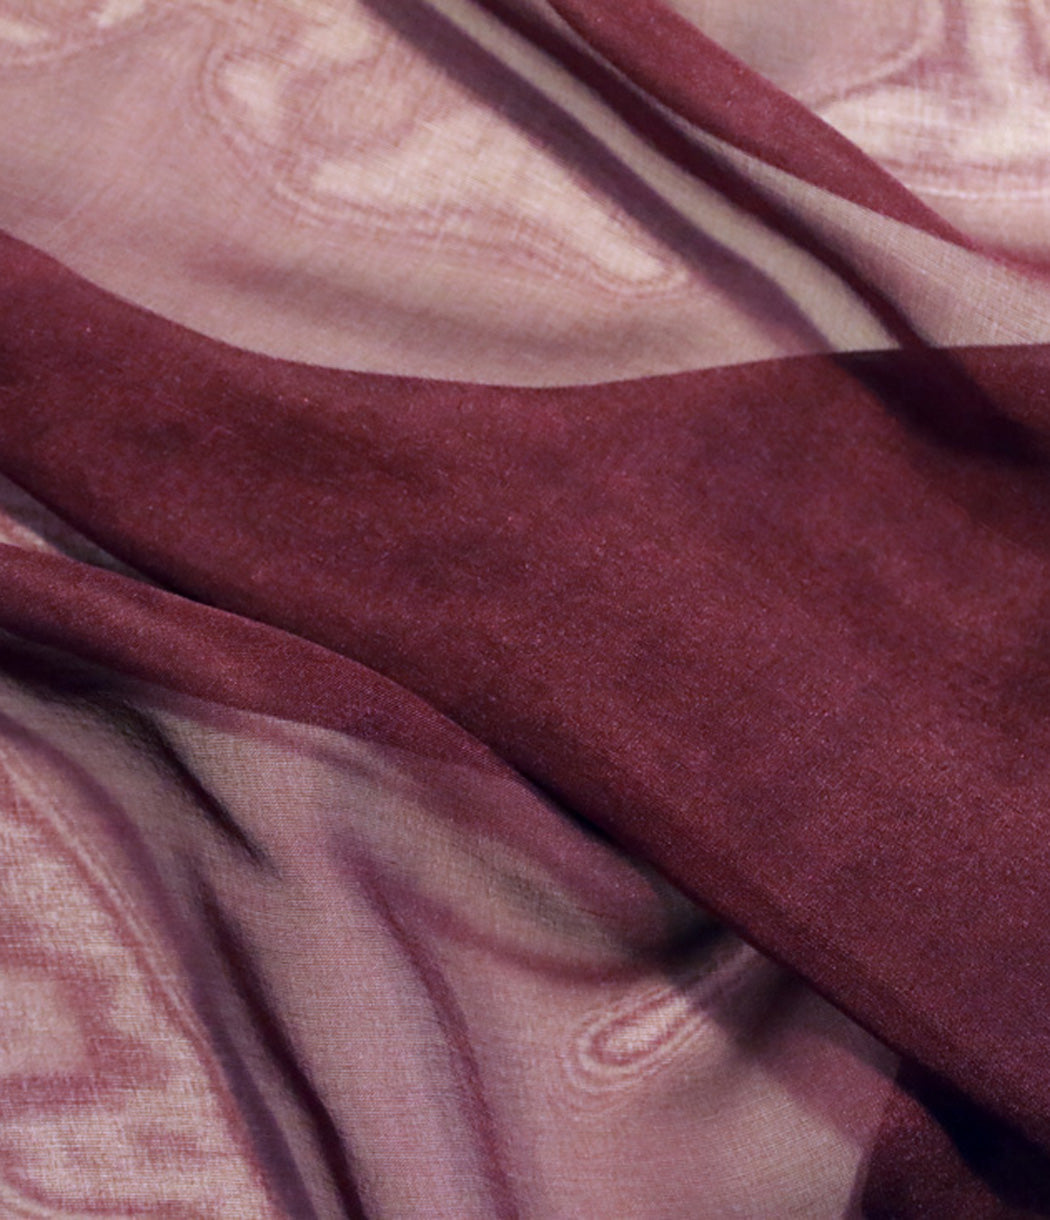 買法式時尚精品絲巾 日本製 スカーフを買う online buy french chic silk chiffon scarf made in japan